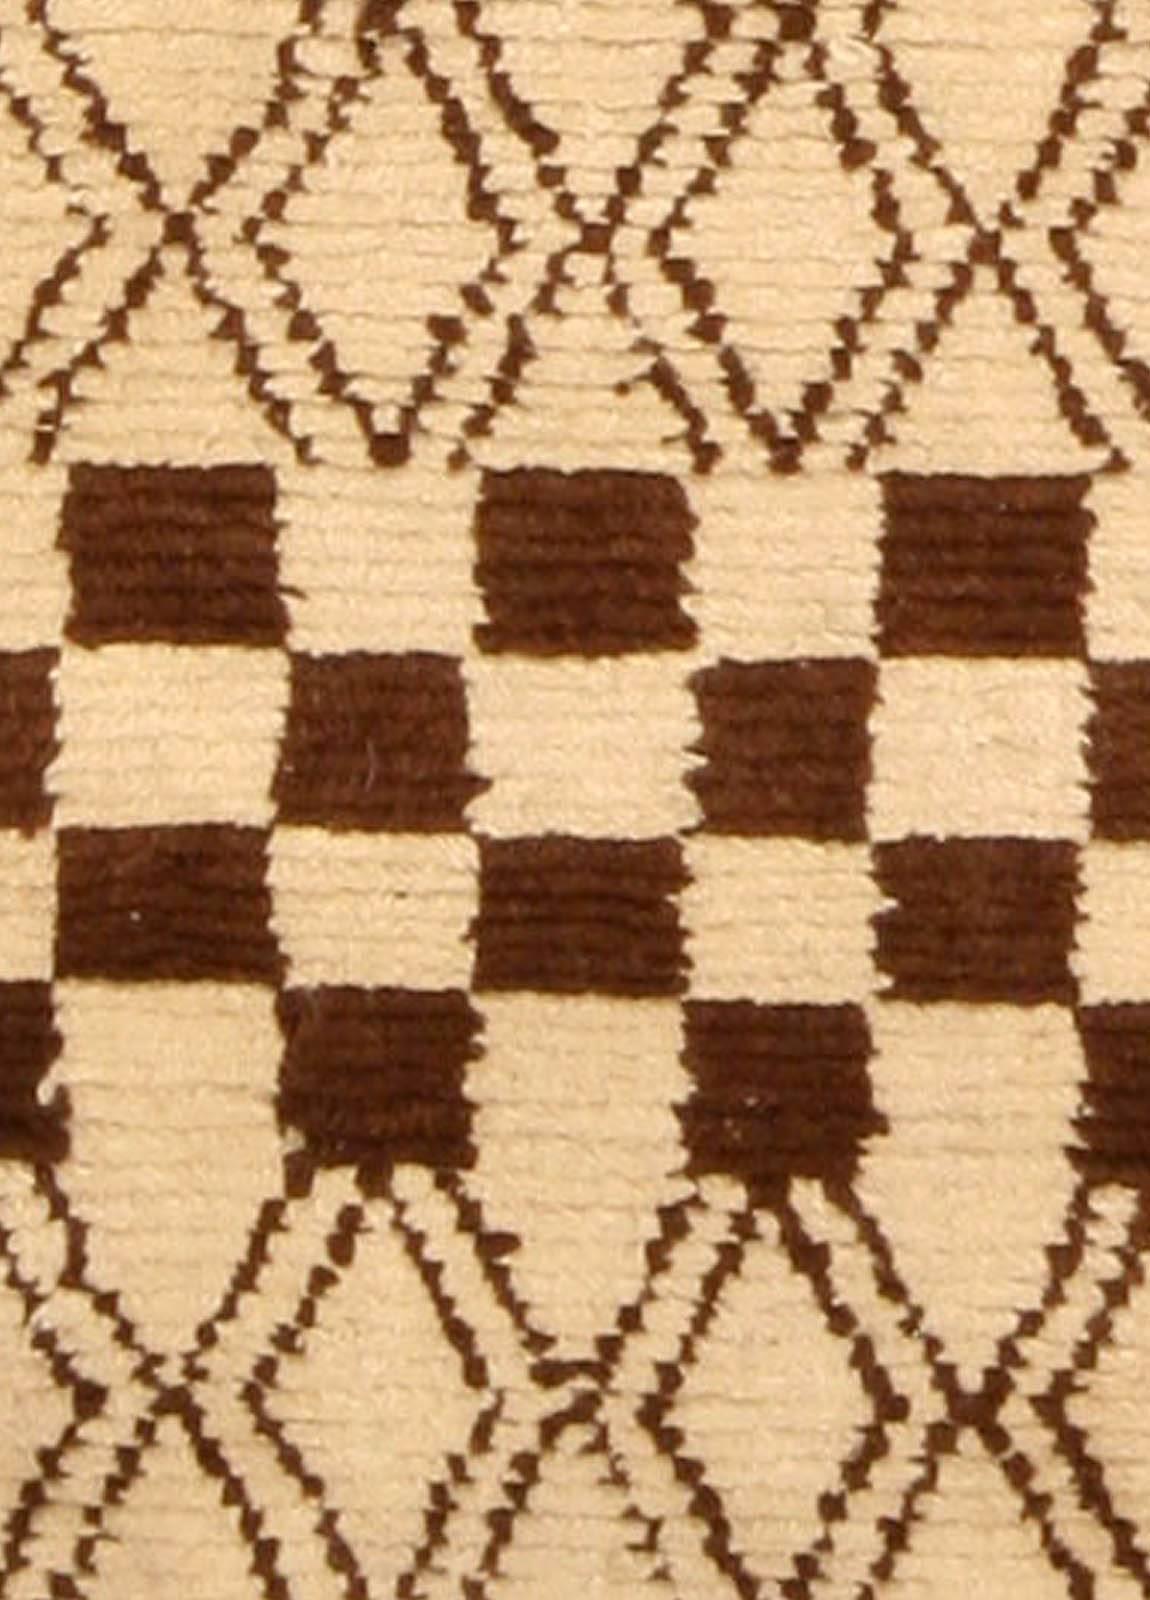 Modern 1790 Moroccan rug in beige and brown by Doris Leslie Blau
Size: 4'0